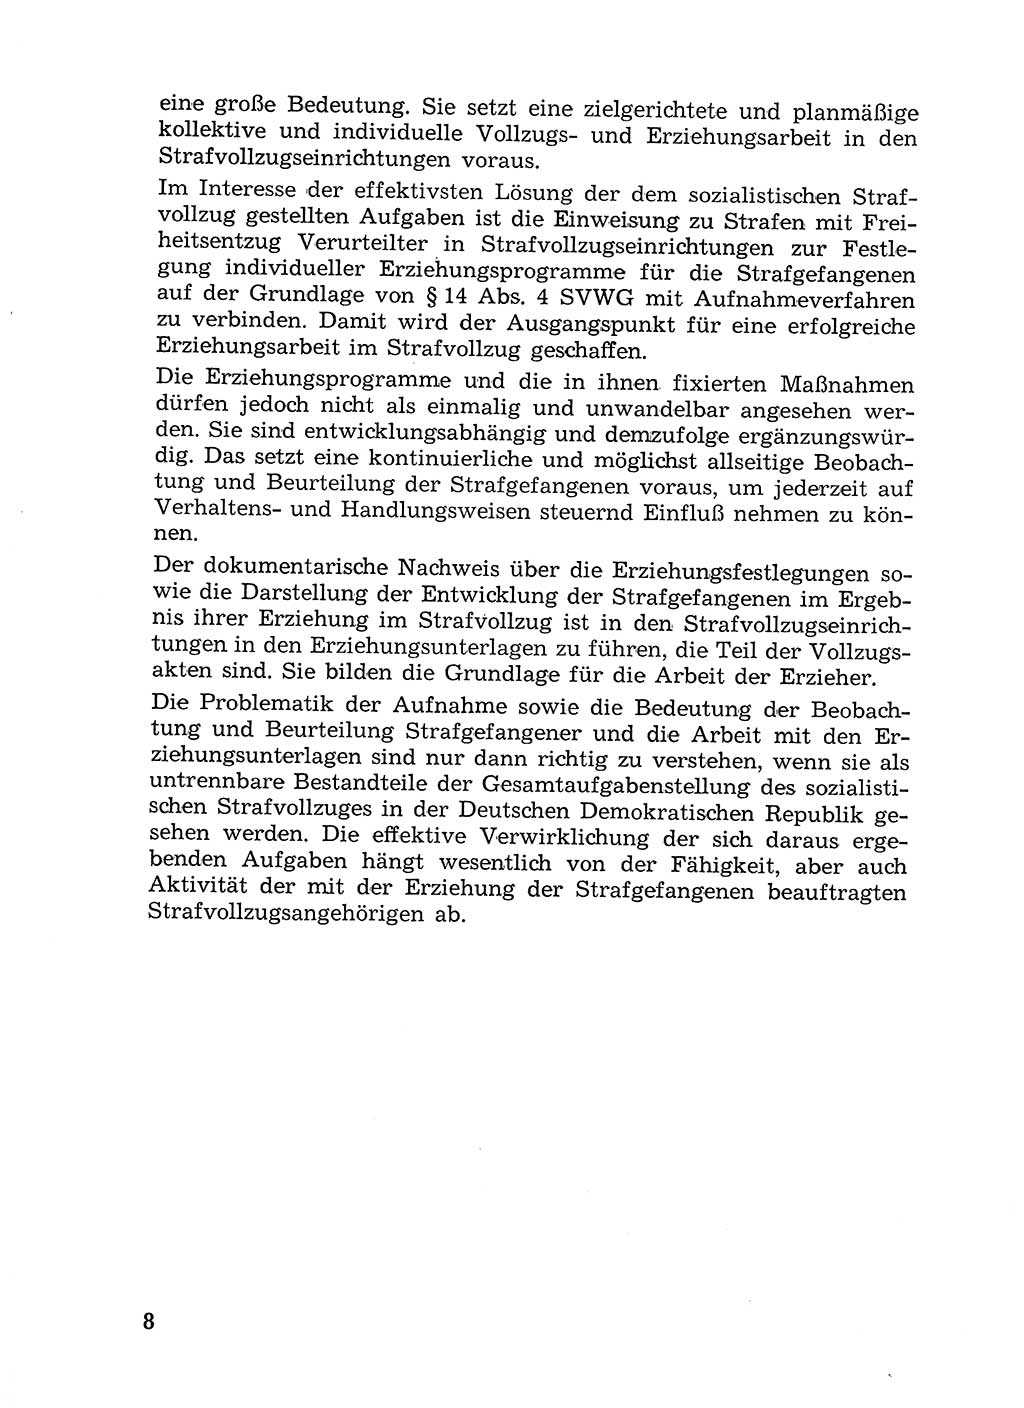 Sozialistischer Strafvollzug (SV) [Deutsche Demokratische Republik (DDR)] 1972, Seite 8 (Soz. SV DDR 1972, S. 8)